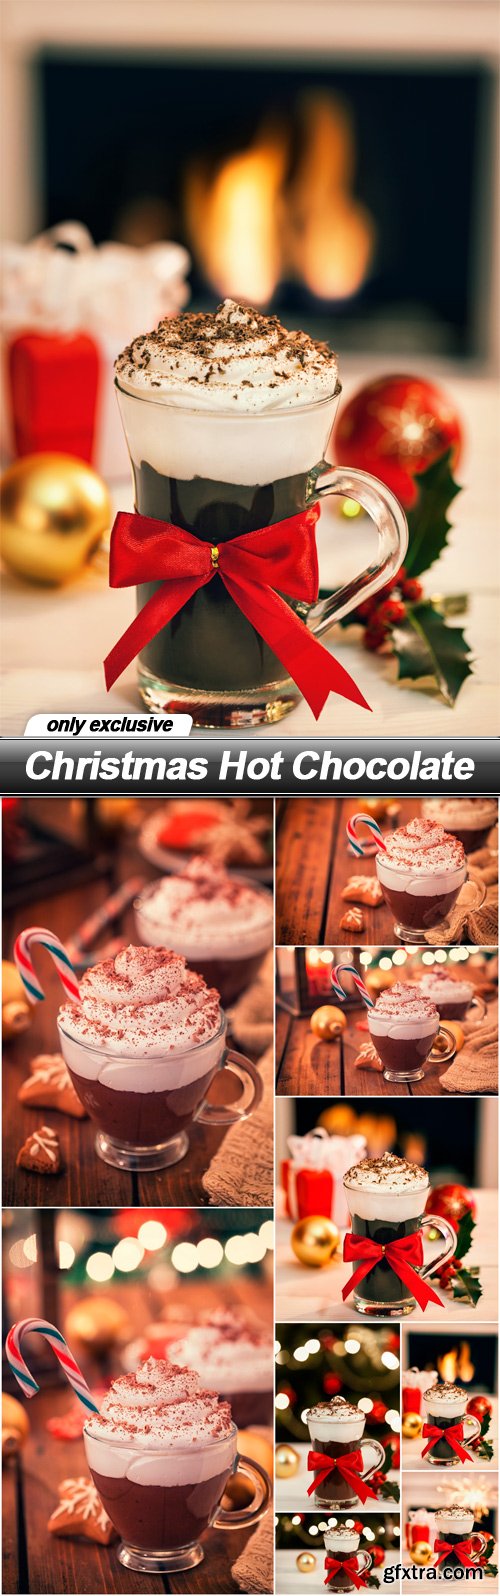 Christmas Hot Chocolate - 10 UHQ JPEG